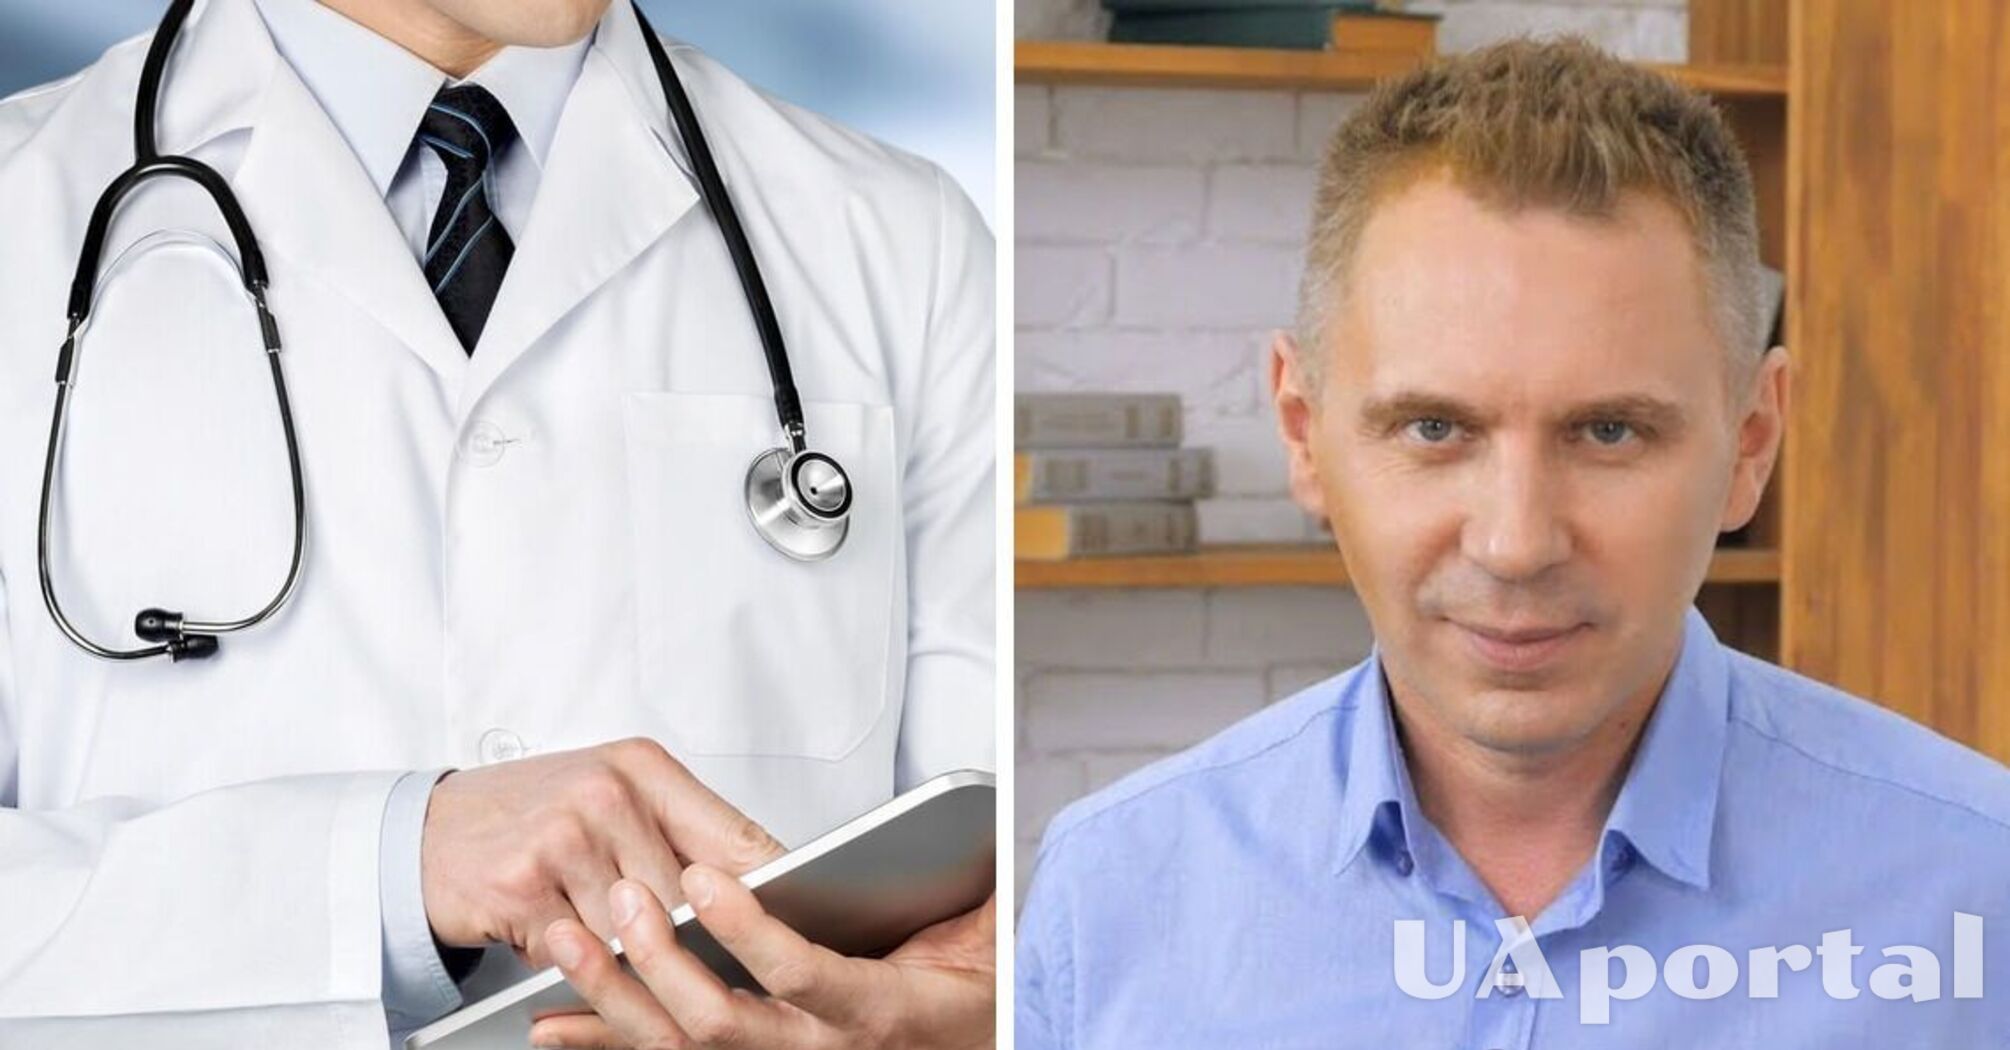 Як українською сказати 'лечащий врач', та чим 'доктор' відрізняється від 'лікаря'